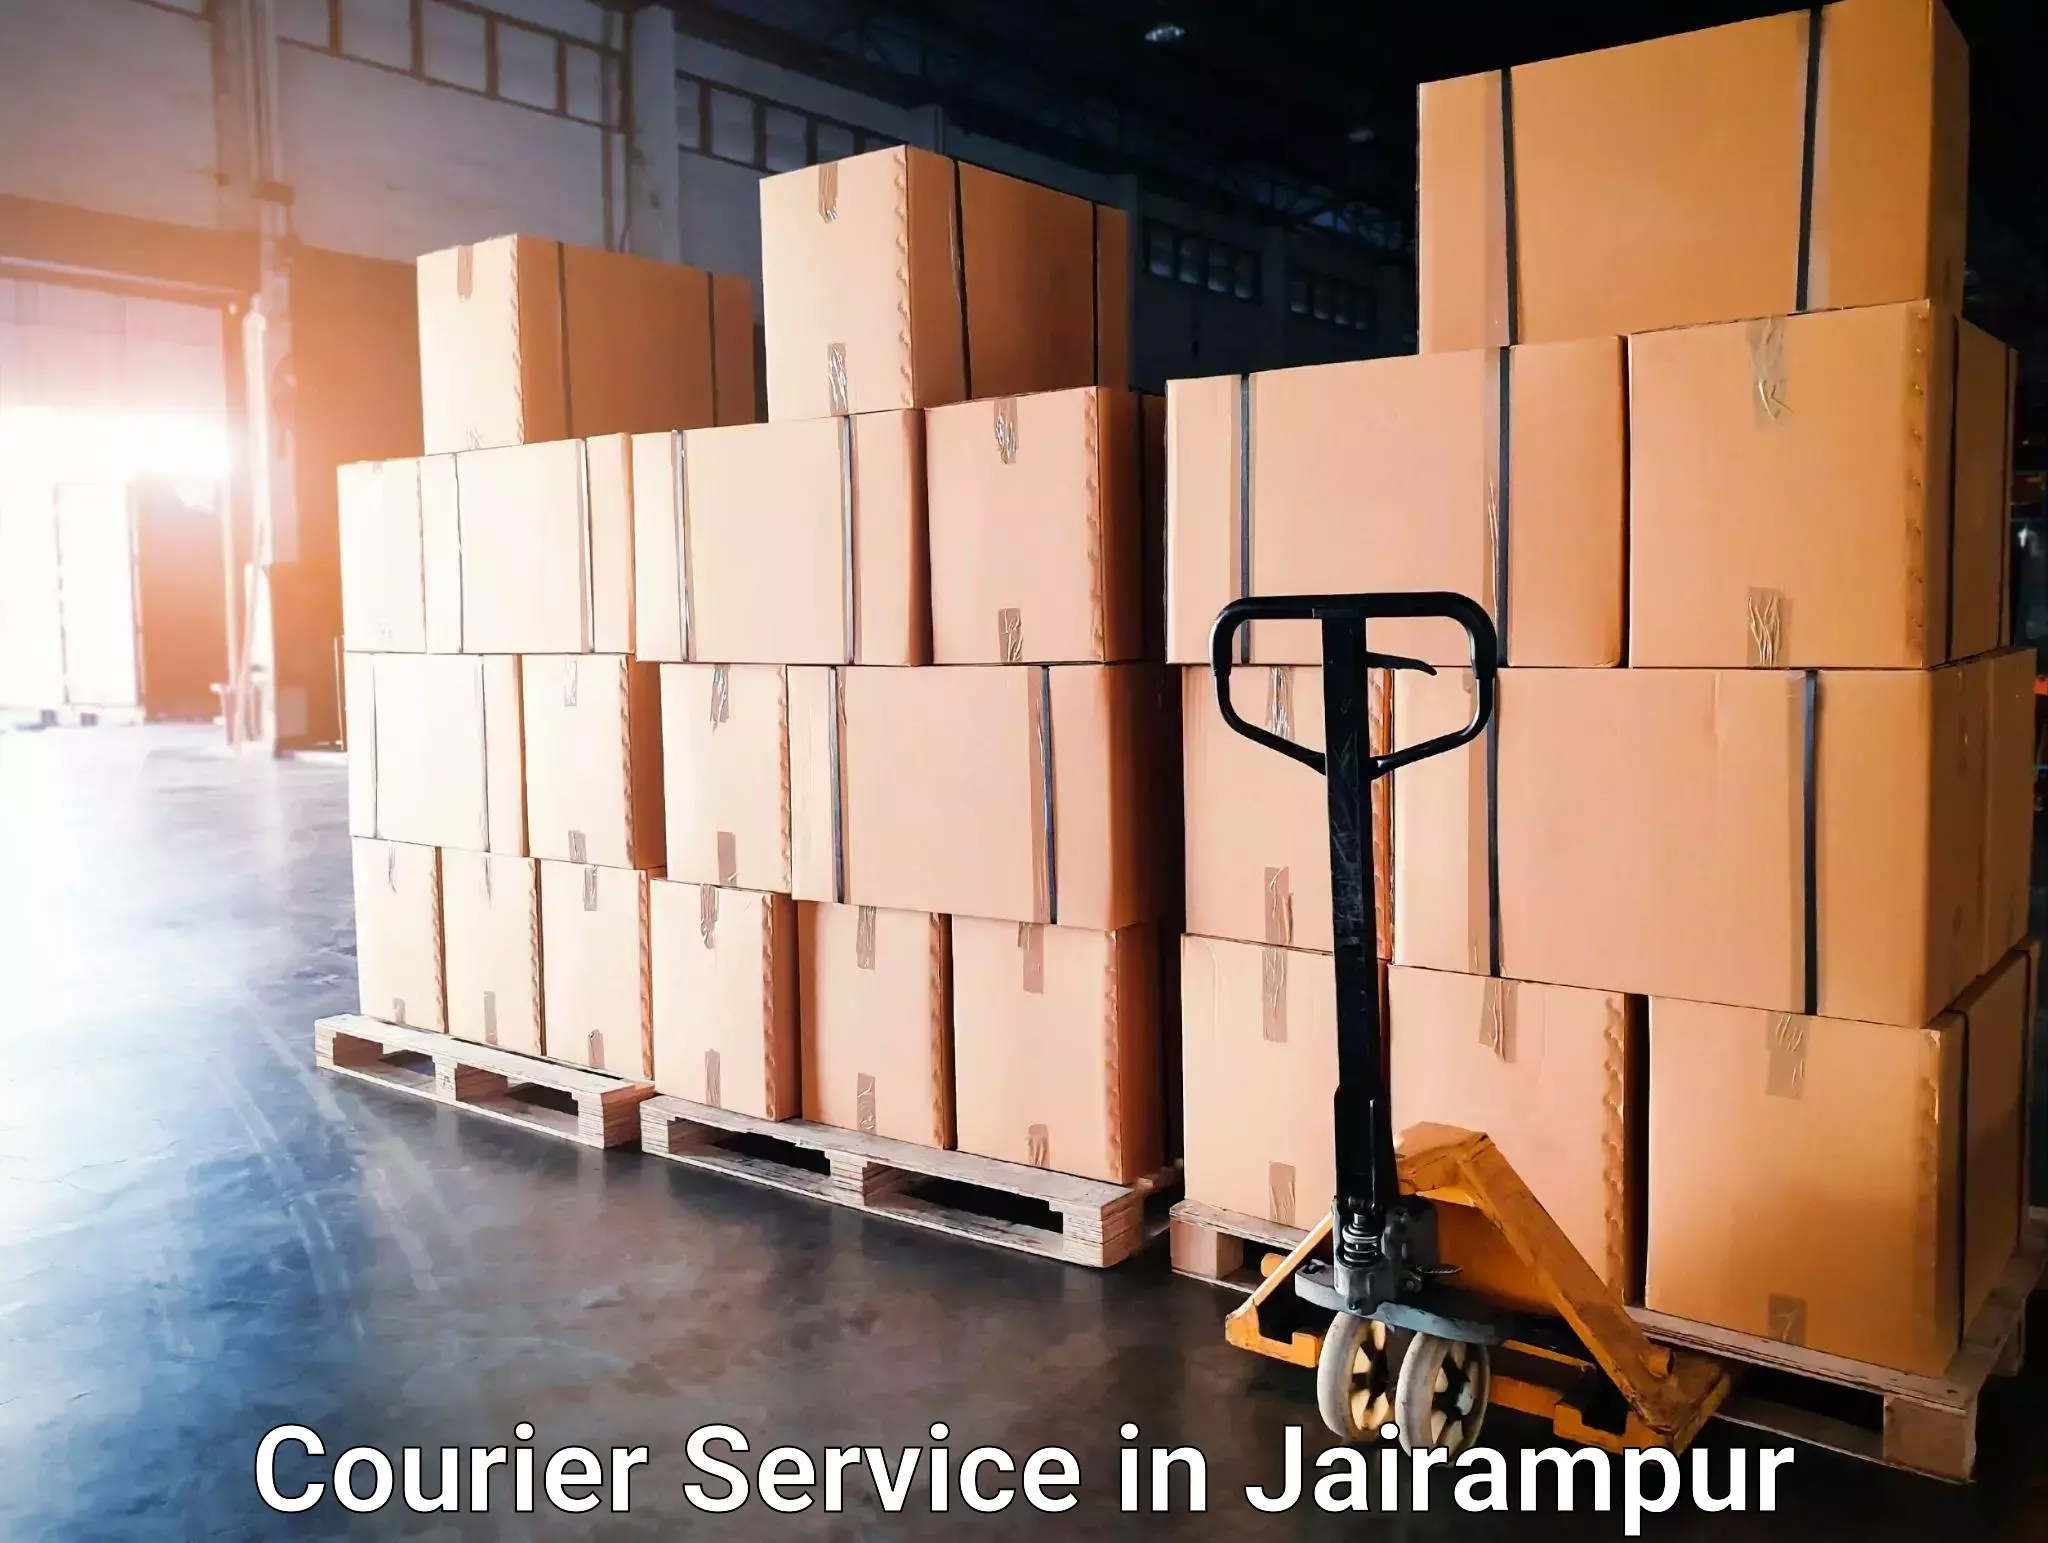 Express package handling in Jairampur